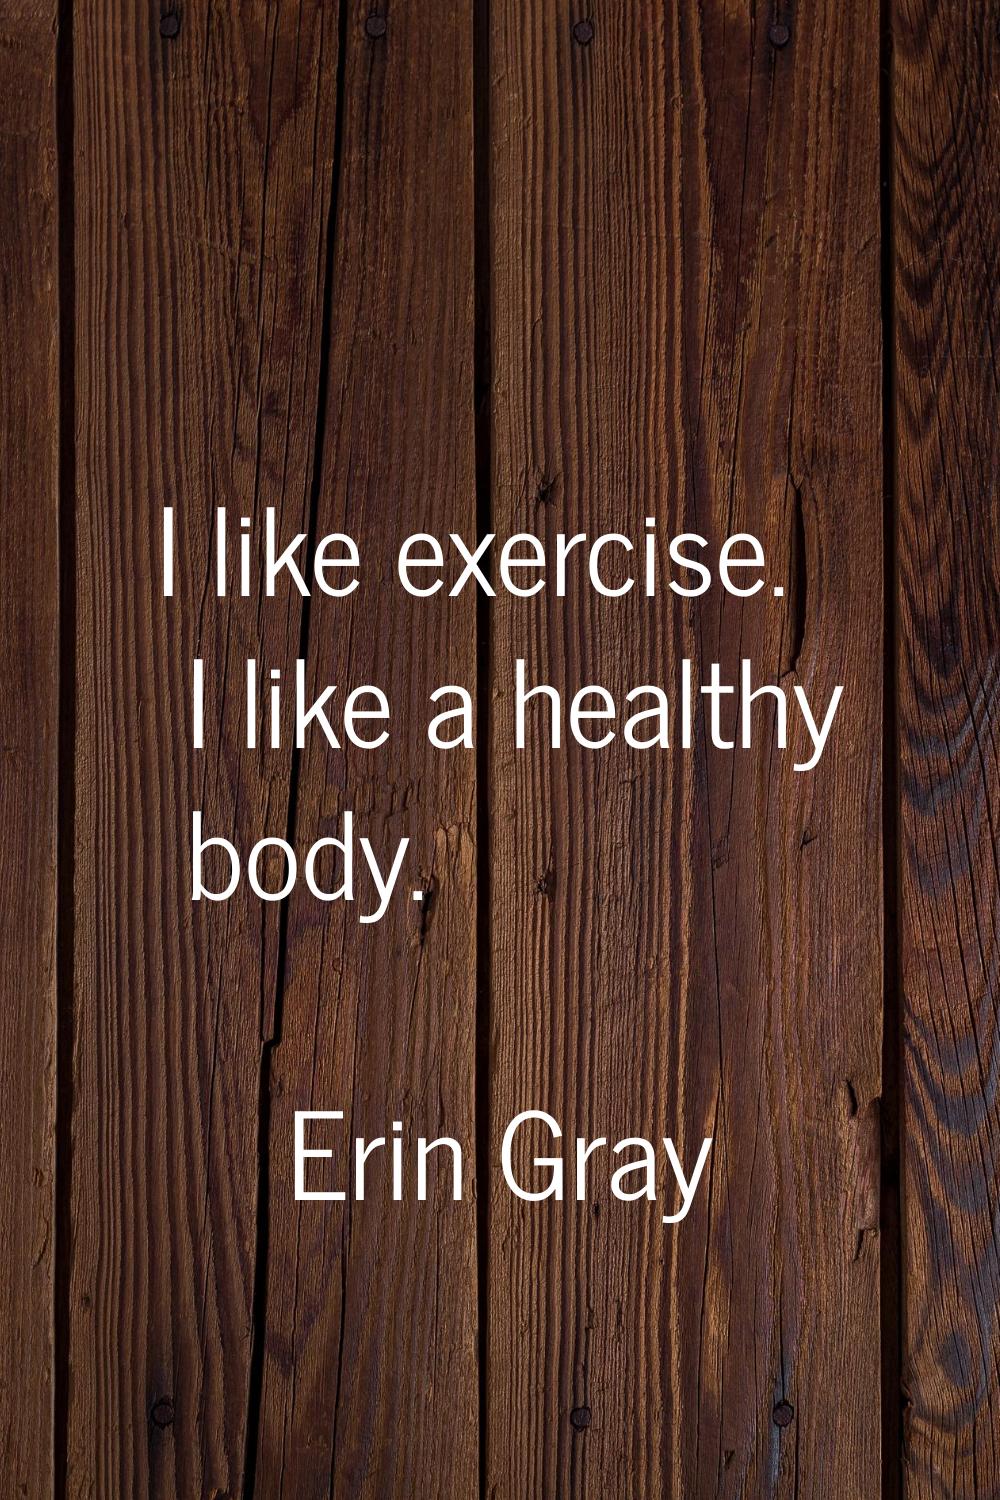 I like exercise. I like a healthy body.